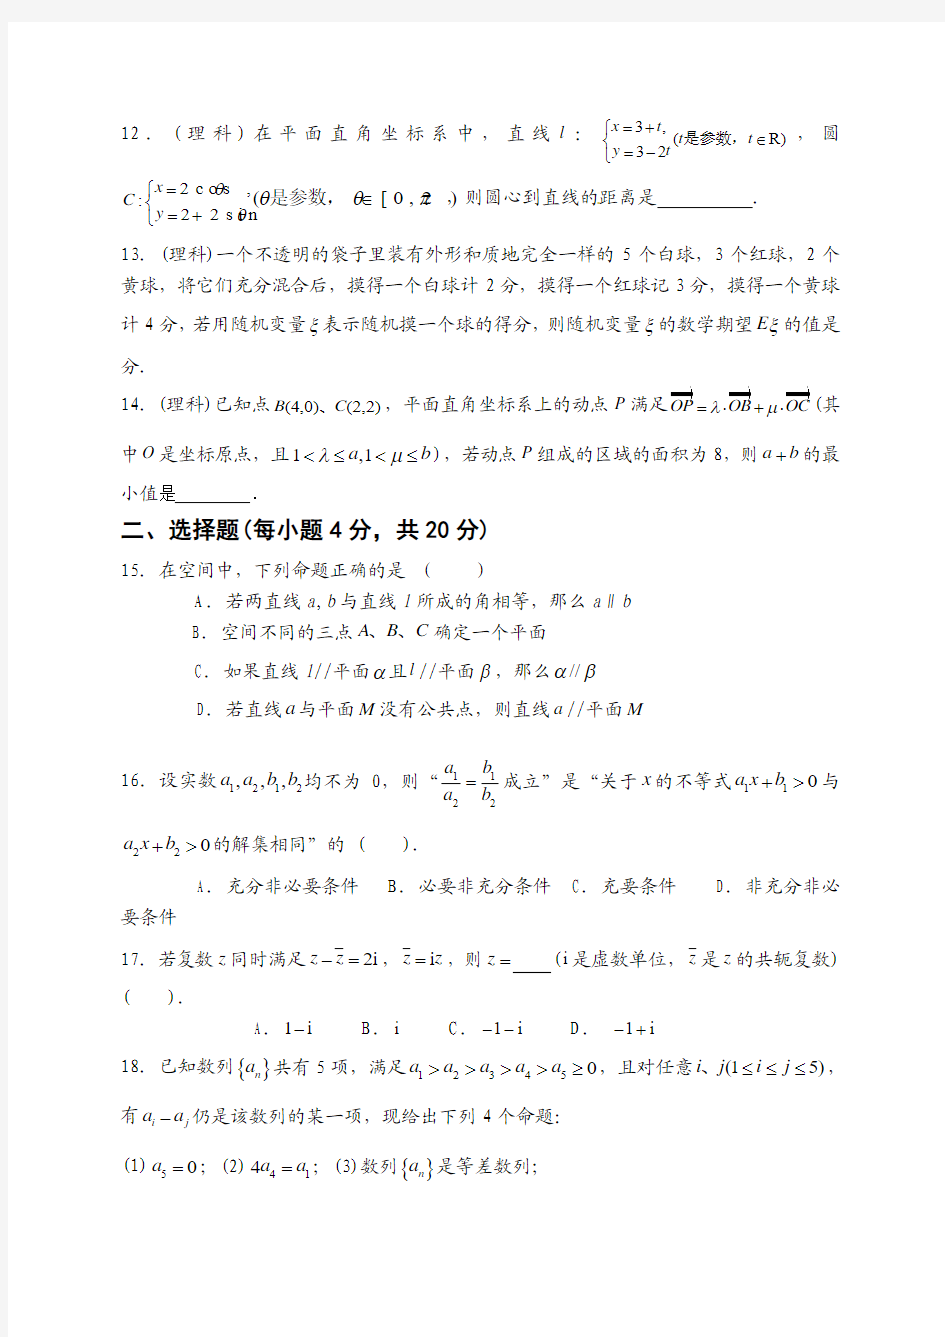 上海市浦东区2015年高考模拟名校命题研究专家预测数学试题(文理合卷)及答案